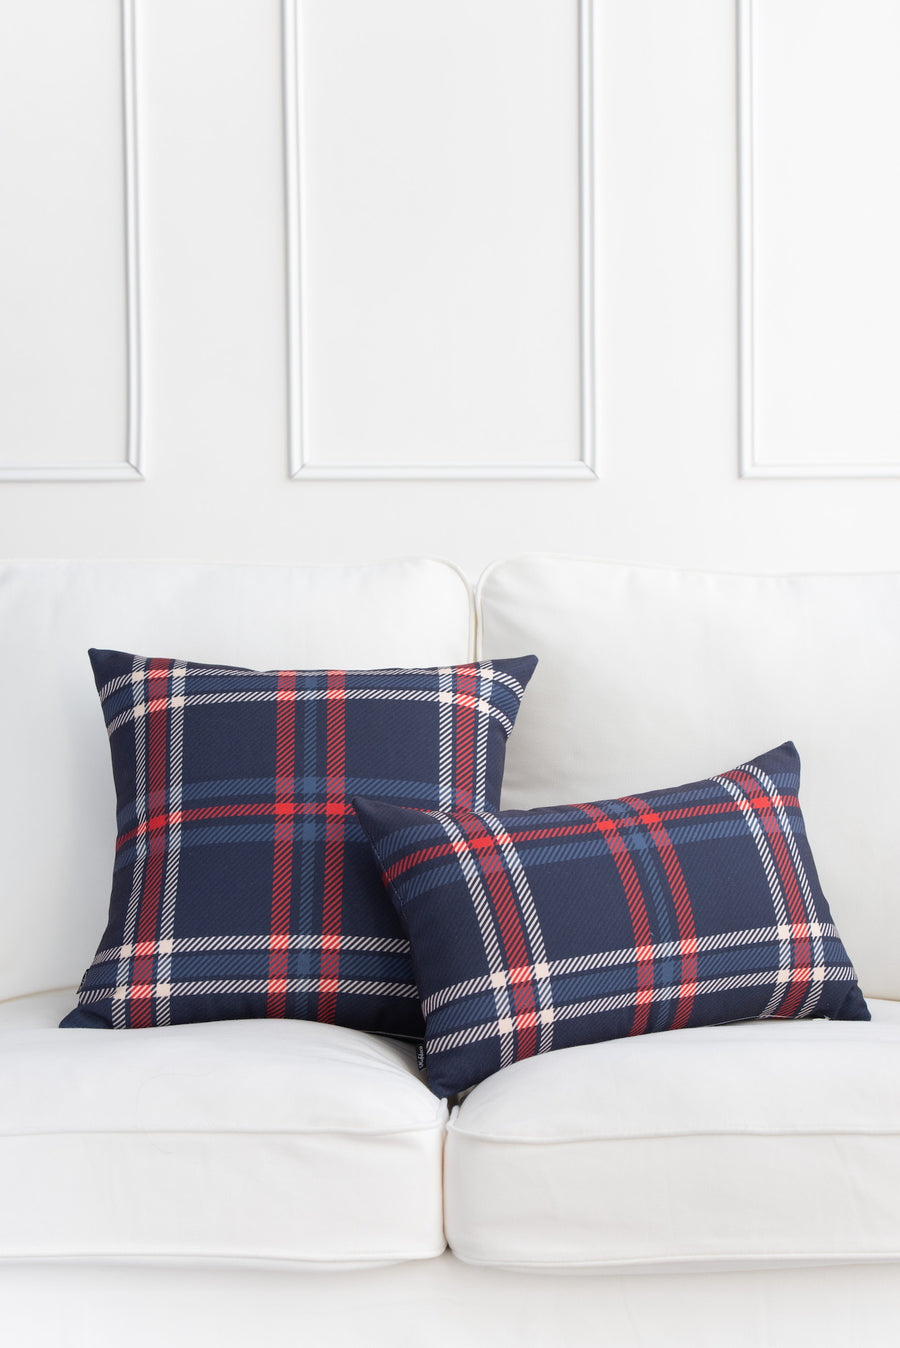 Holiday Lumbar Pillow Cover, Tartan Plaid, Navy Blue, 12